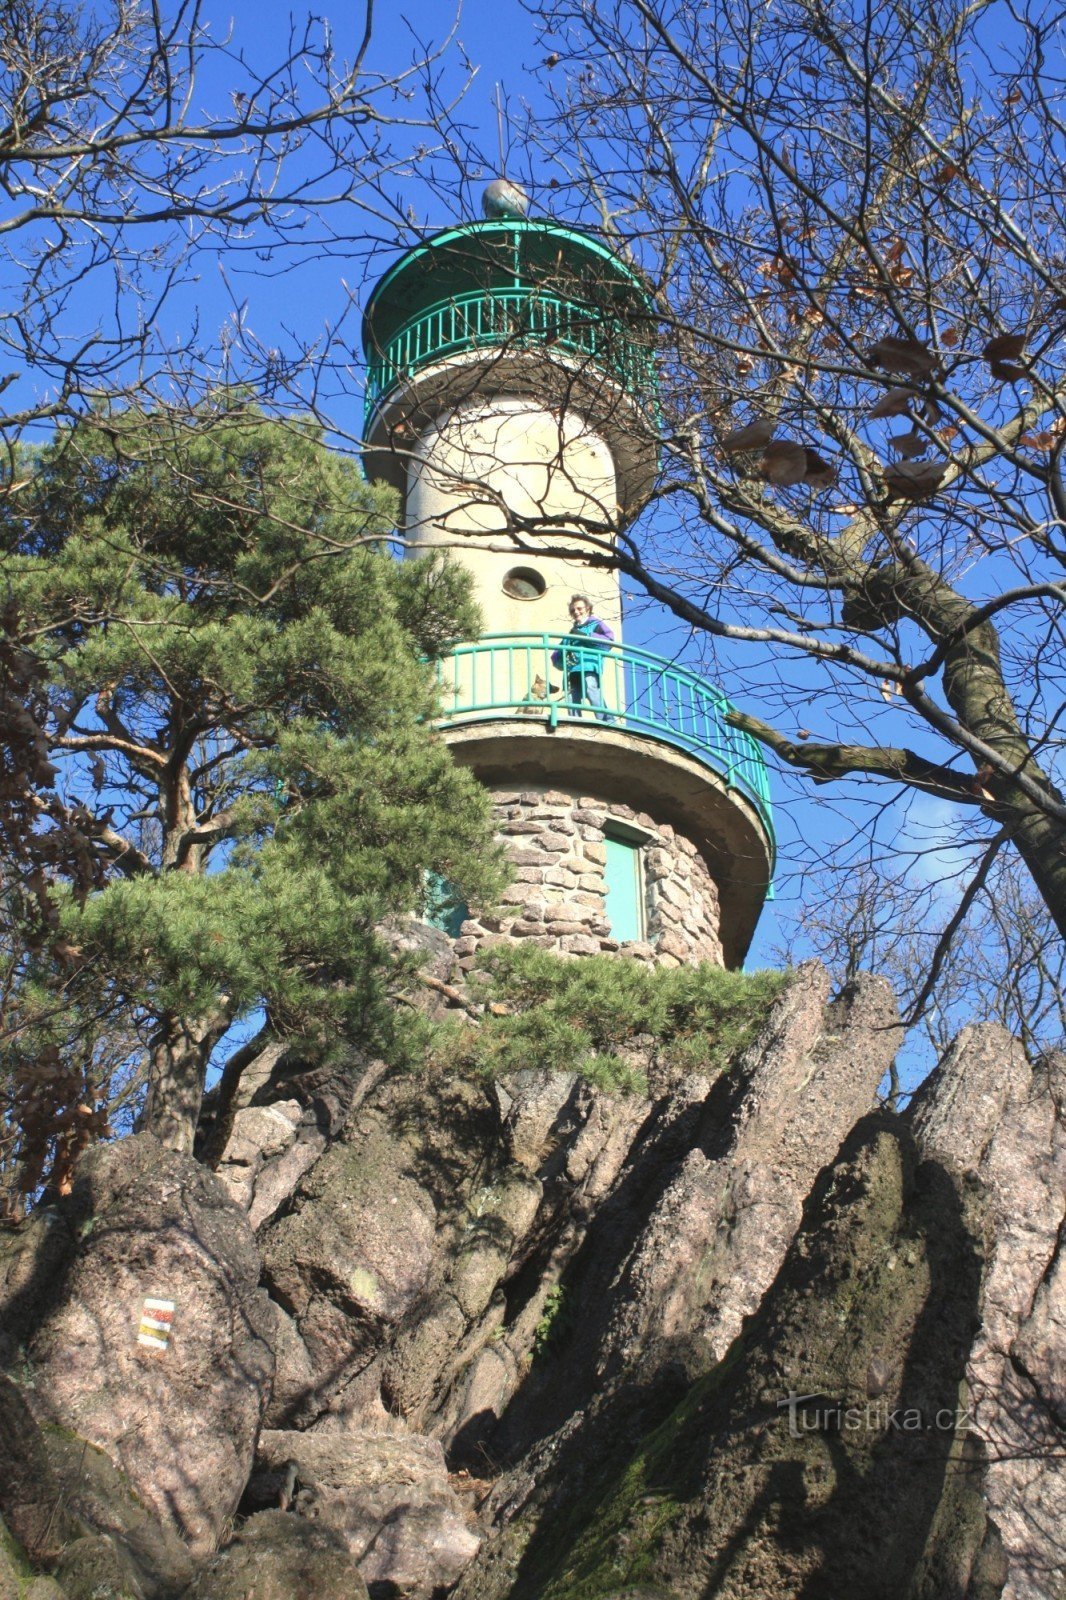 Ο πύργος παρατήρησης βρίσκεται σε μια βραχώδη κορυφογραμμή